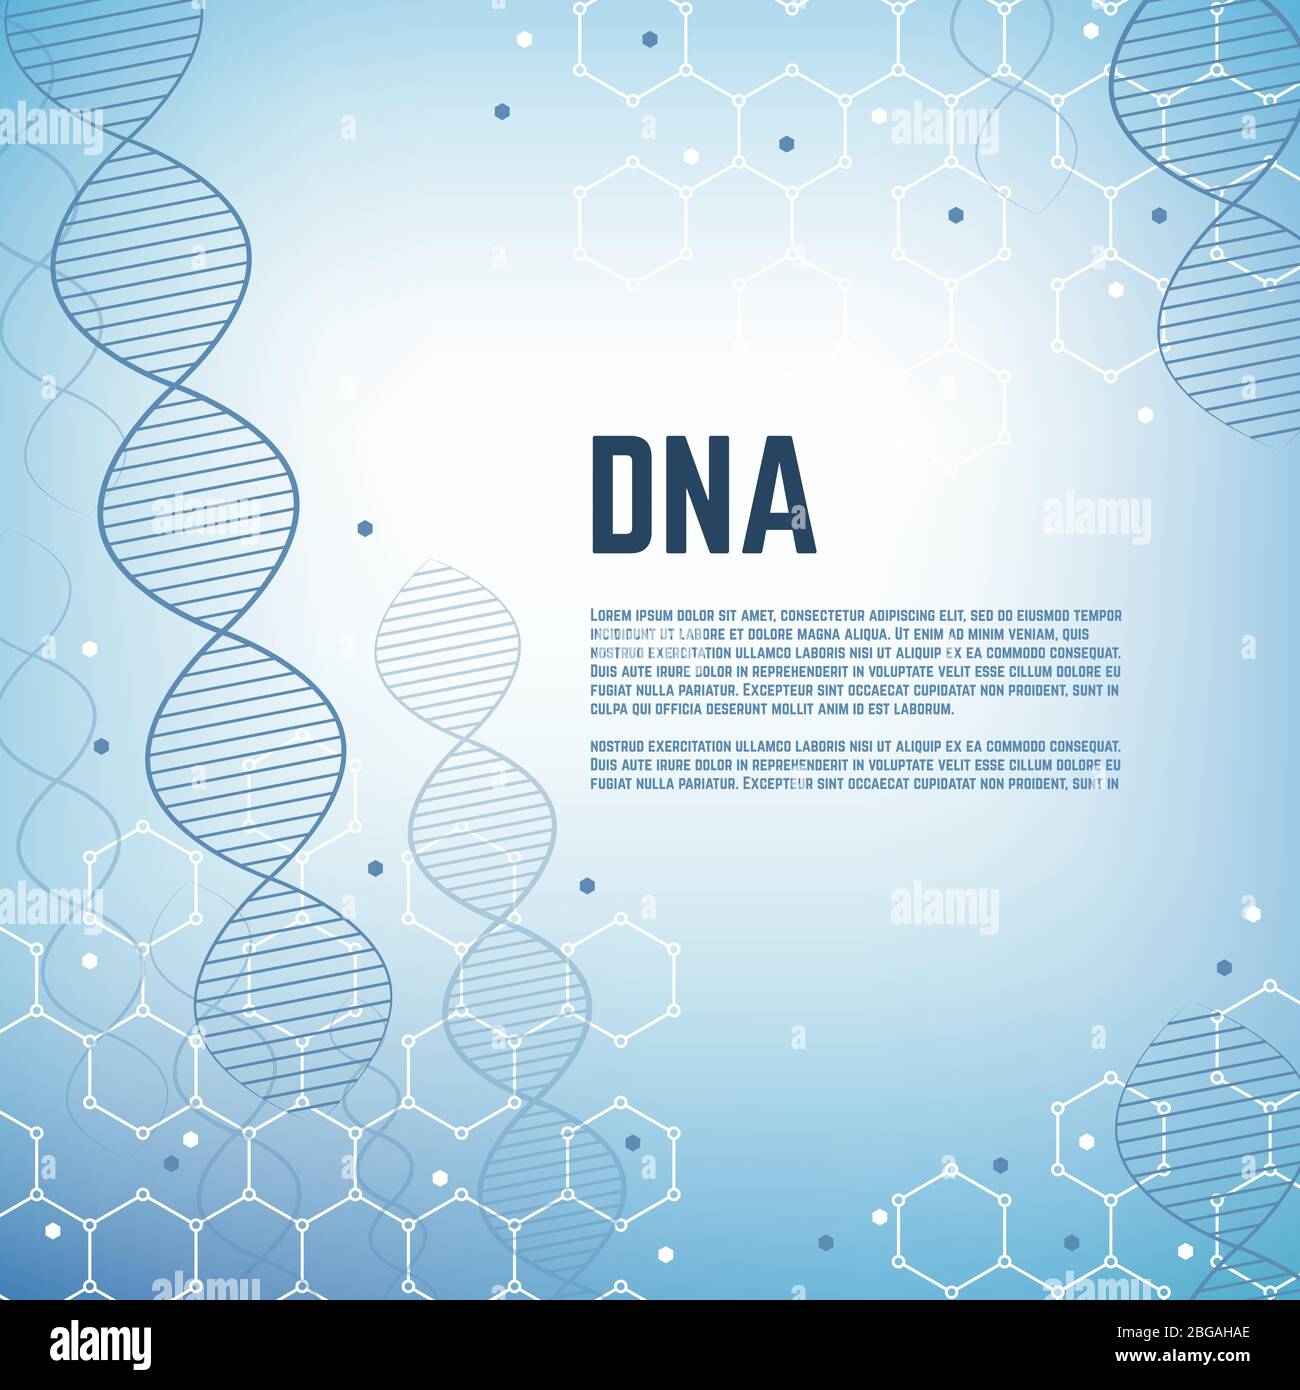 Génétique abstraite science vecteur contexte avec adn humain modèle de molécule chromosomique. Bannière modèle ADN, illustration moléculaire cellulaire et chromosomique Illustration de Vecteur